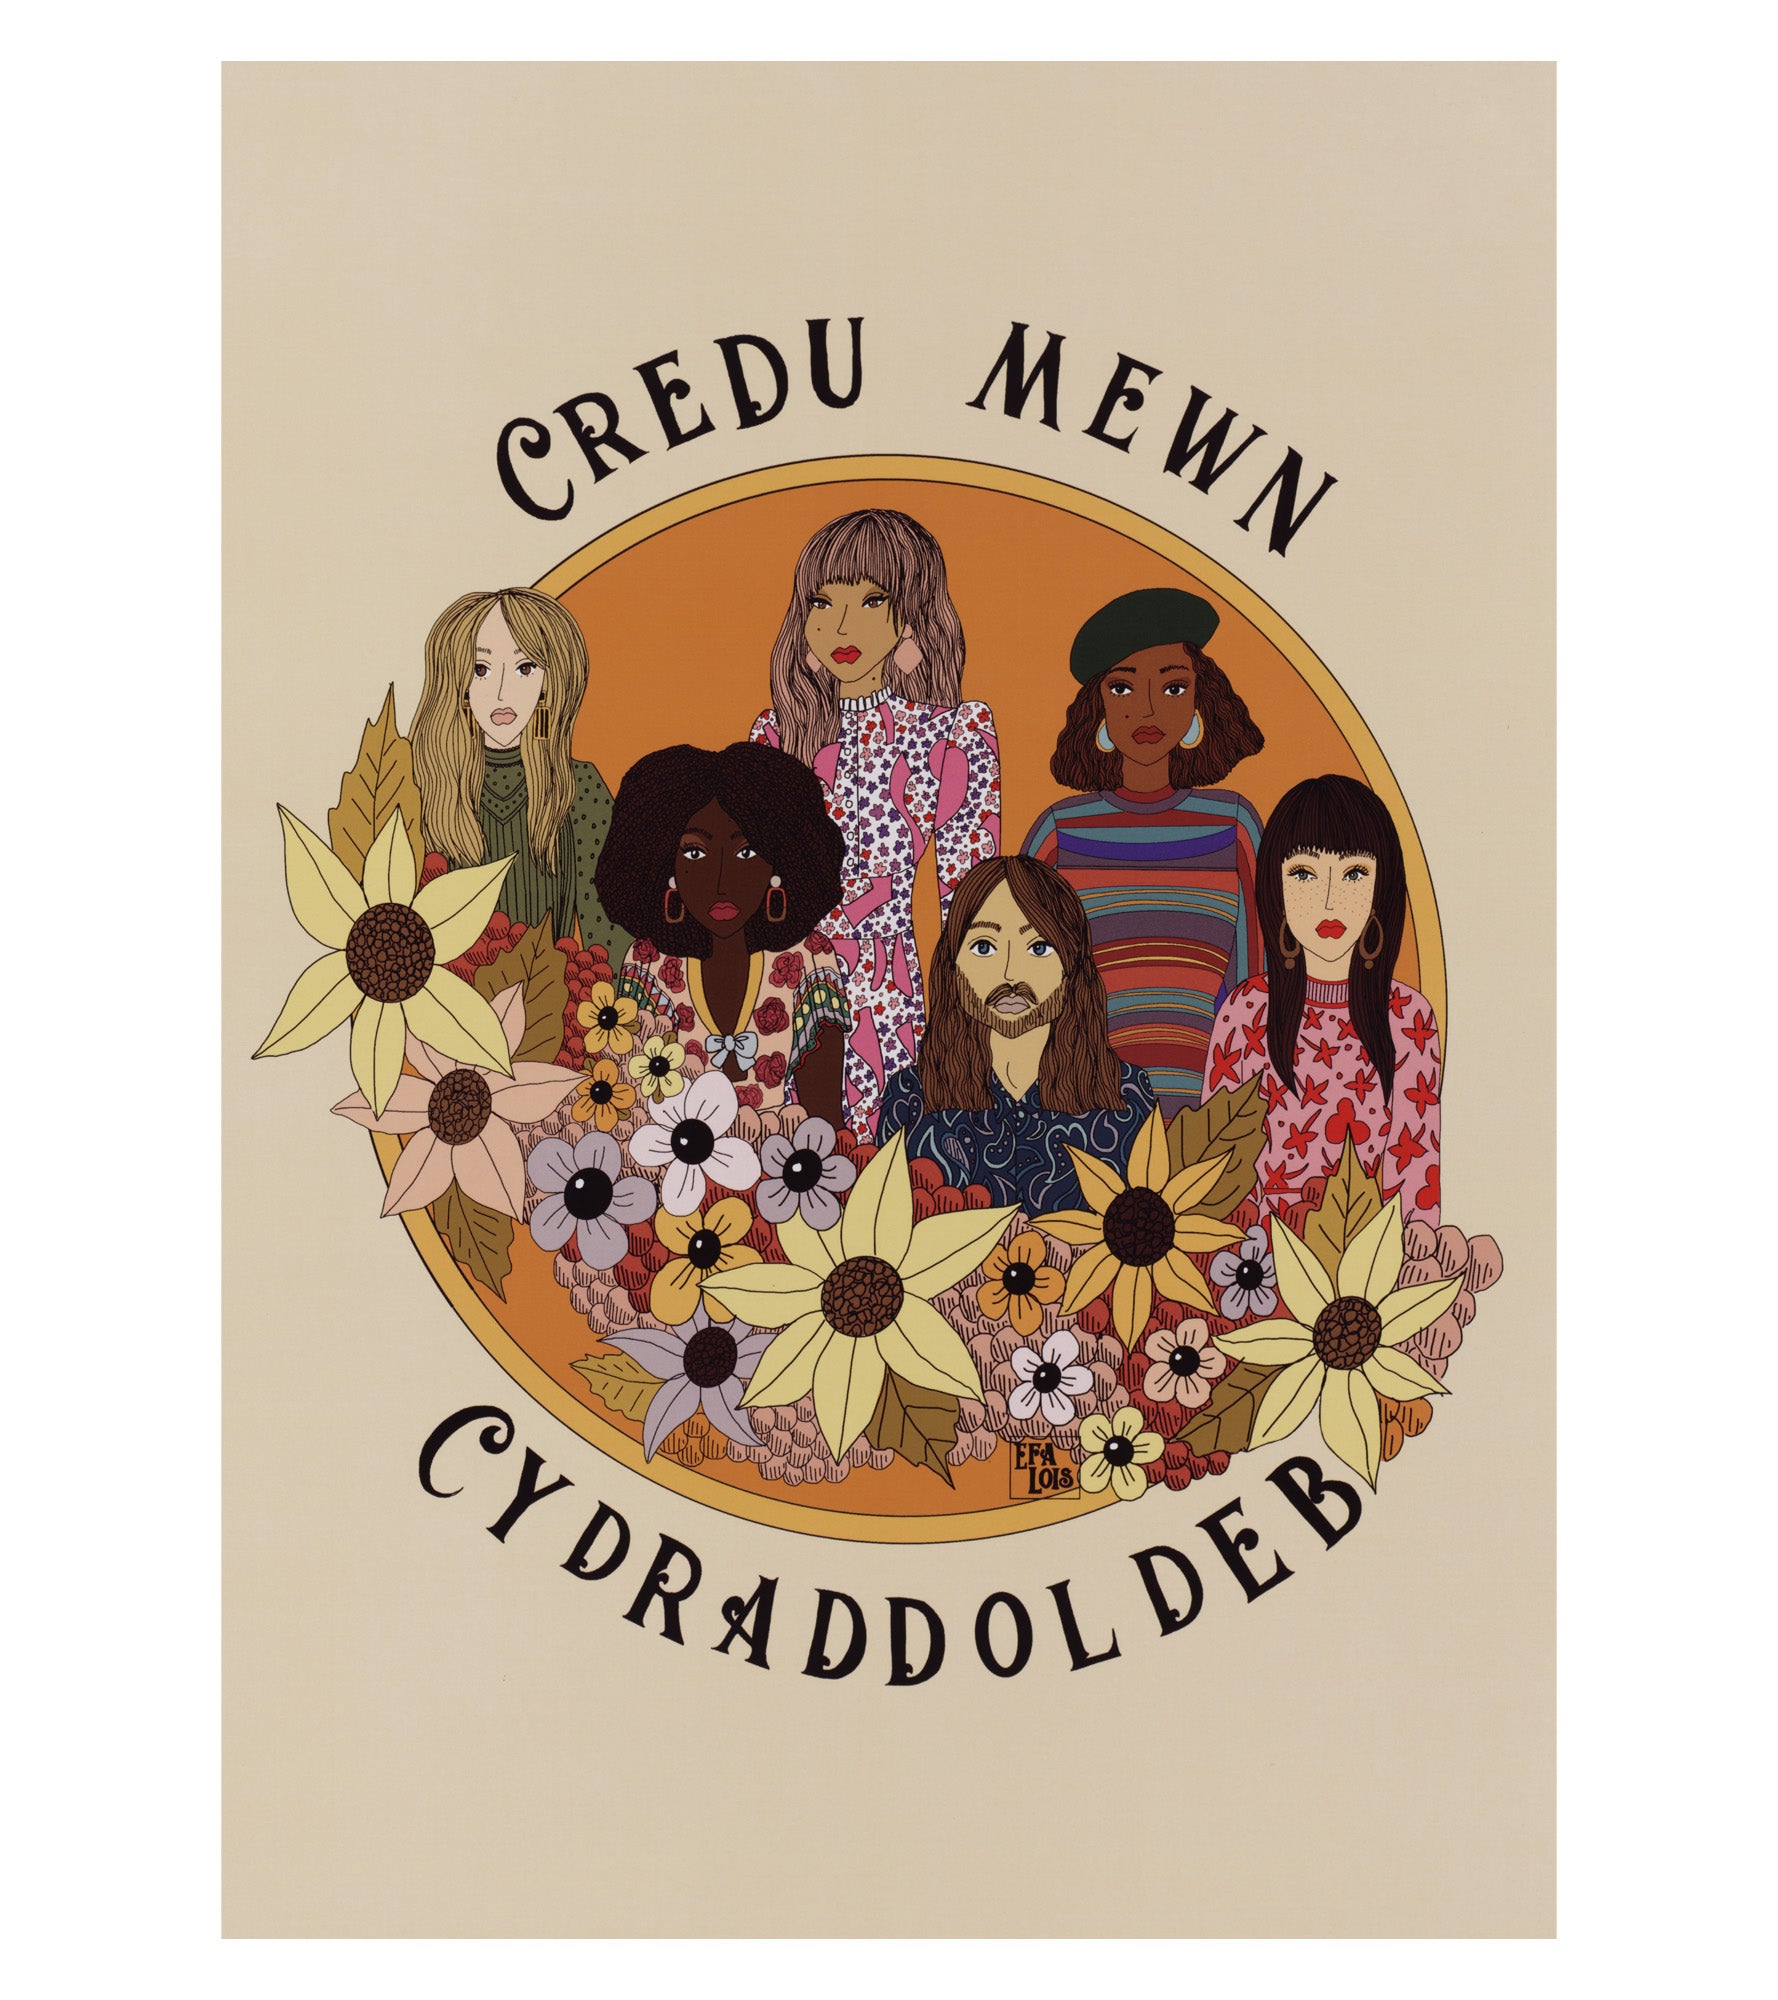 'Credu mewn Cydraddoldeb' (Believe in Equality) Poster by Efa Lois